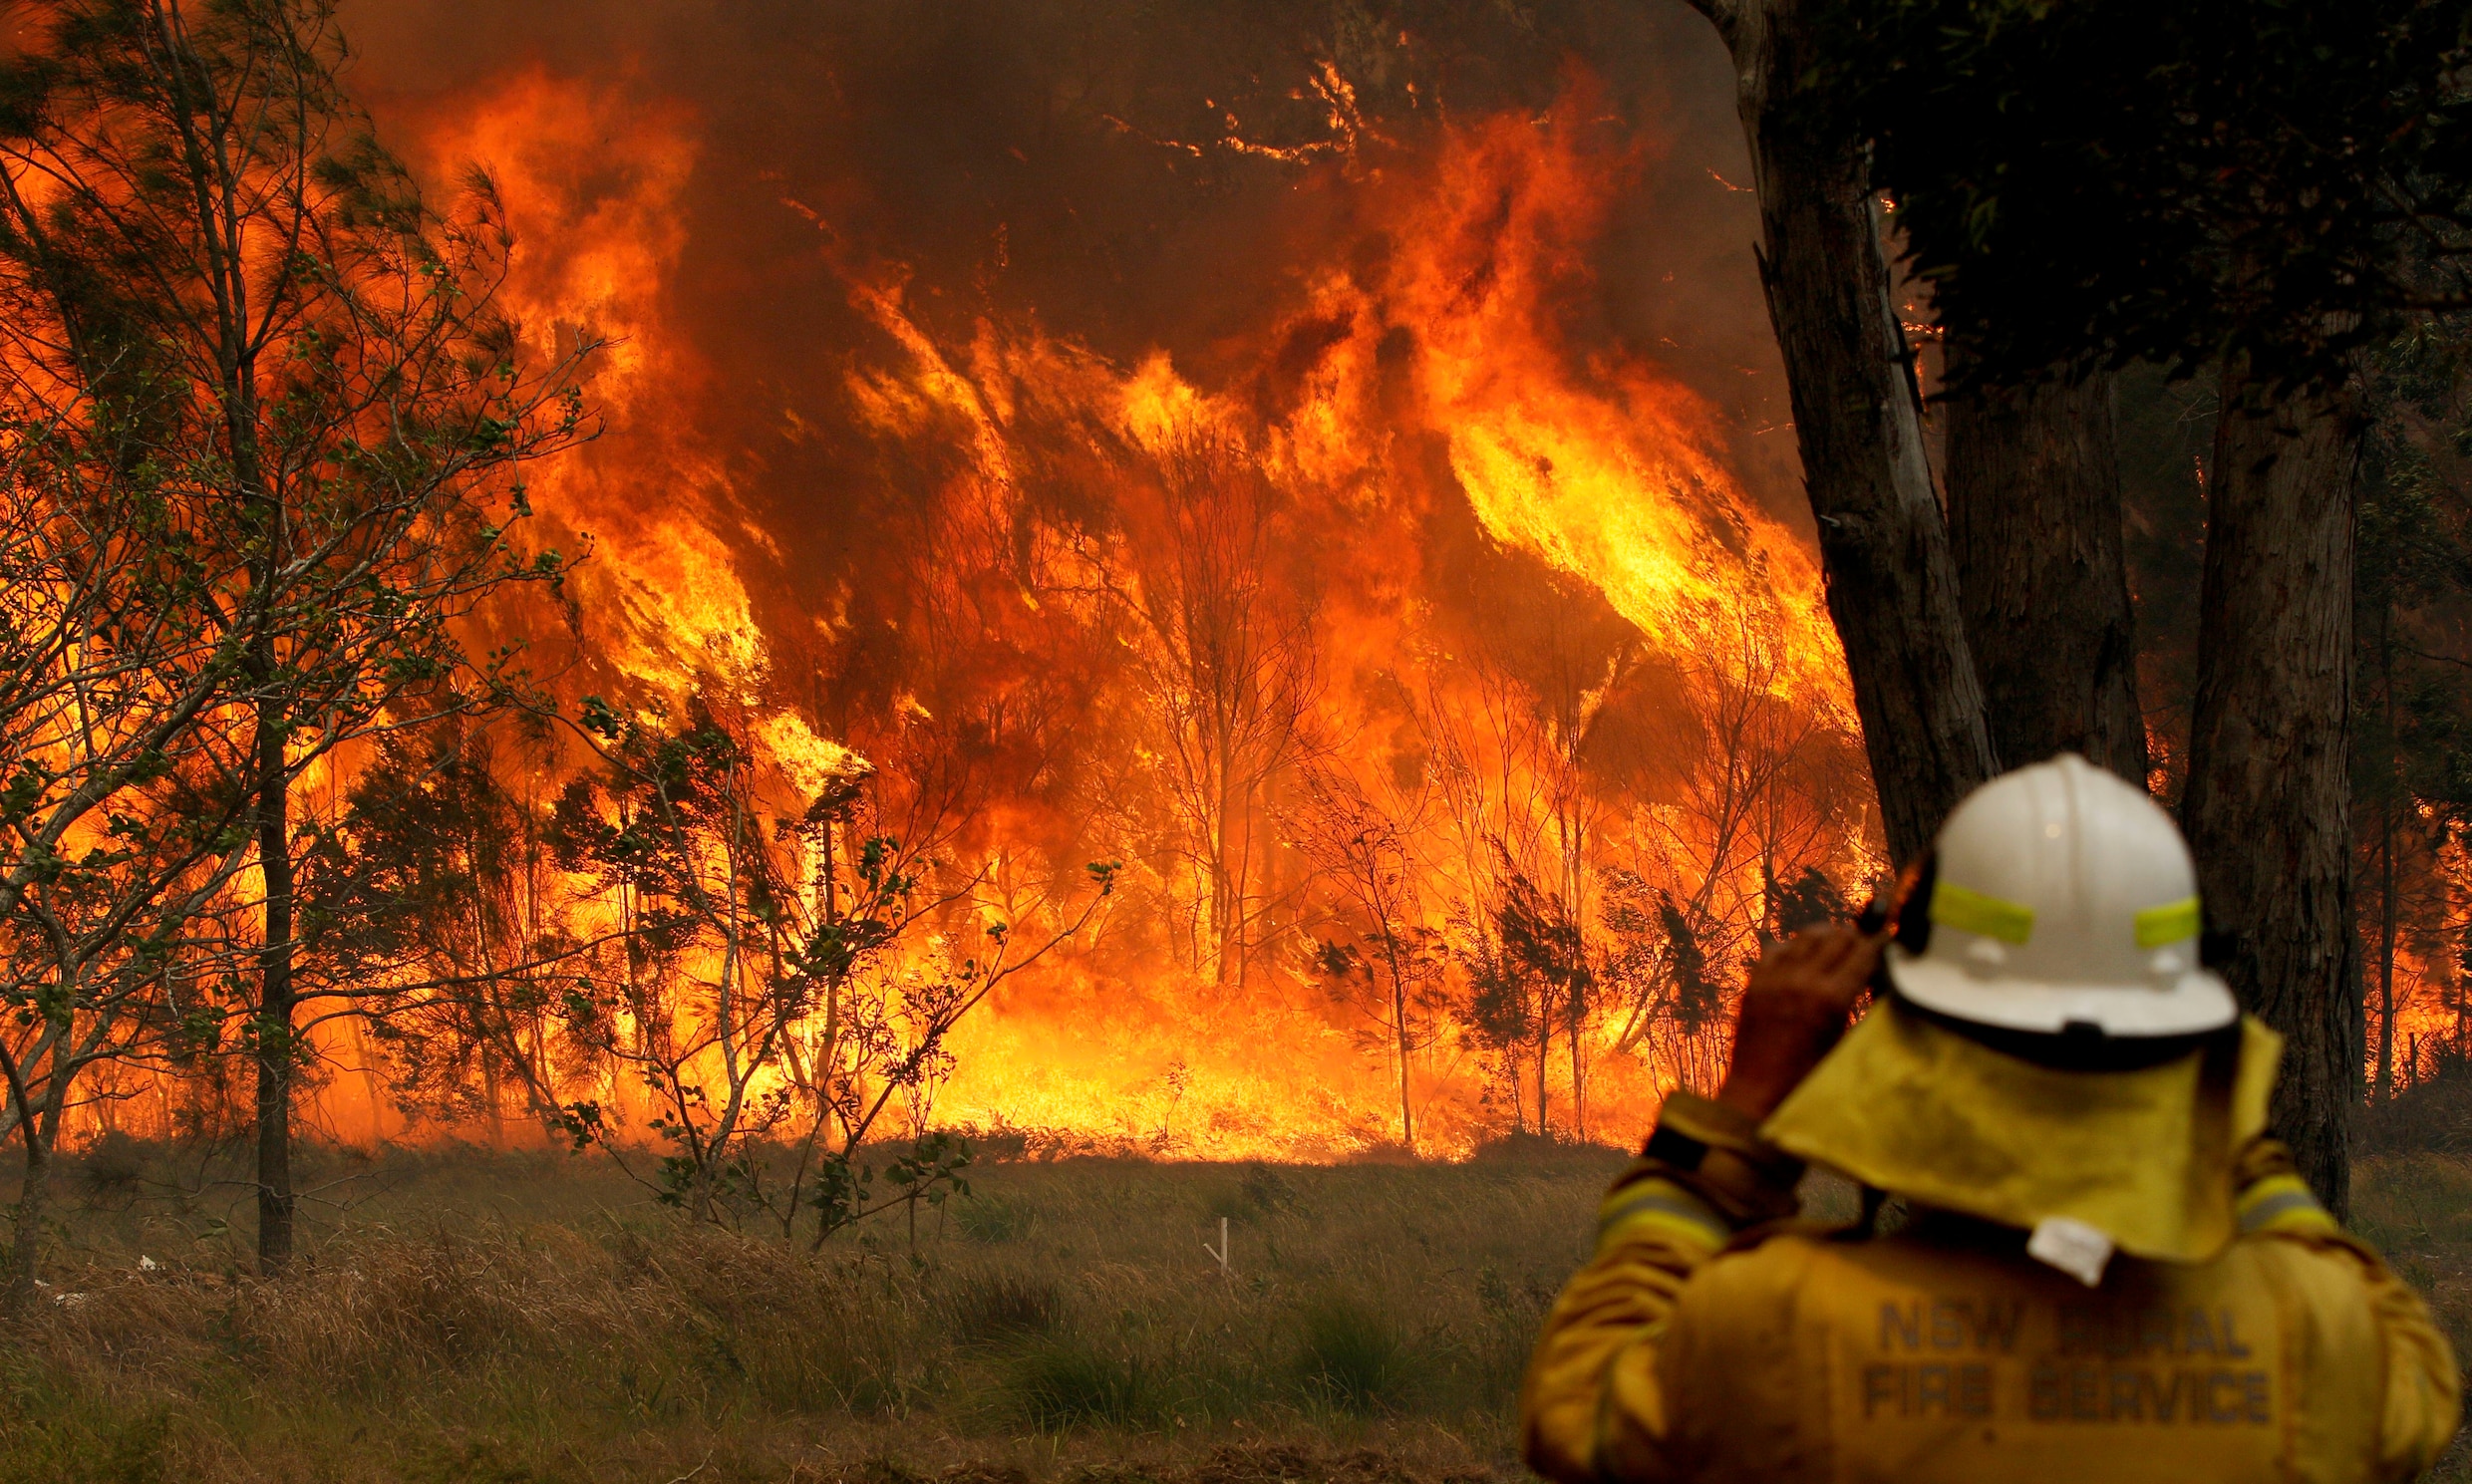 ▶ ‘Angstaanjagende’ bosbranden in Australië: drie doden en 100 huizen verwoest